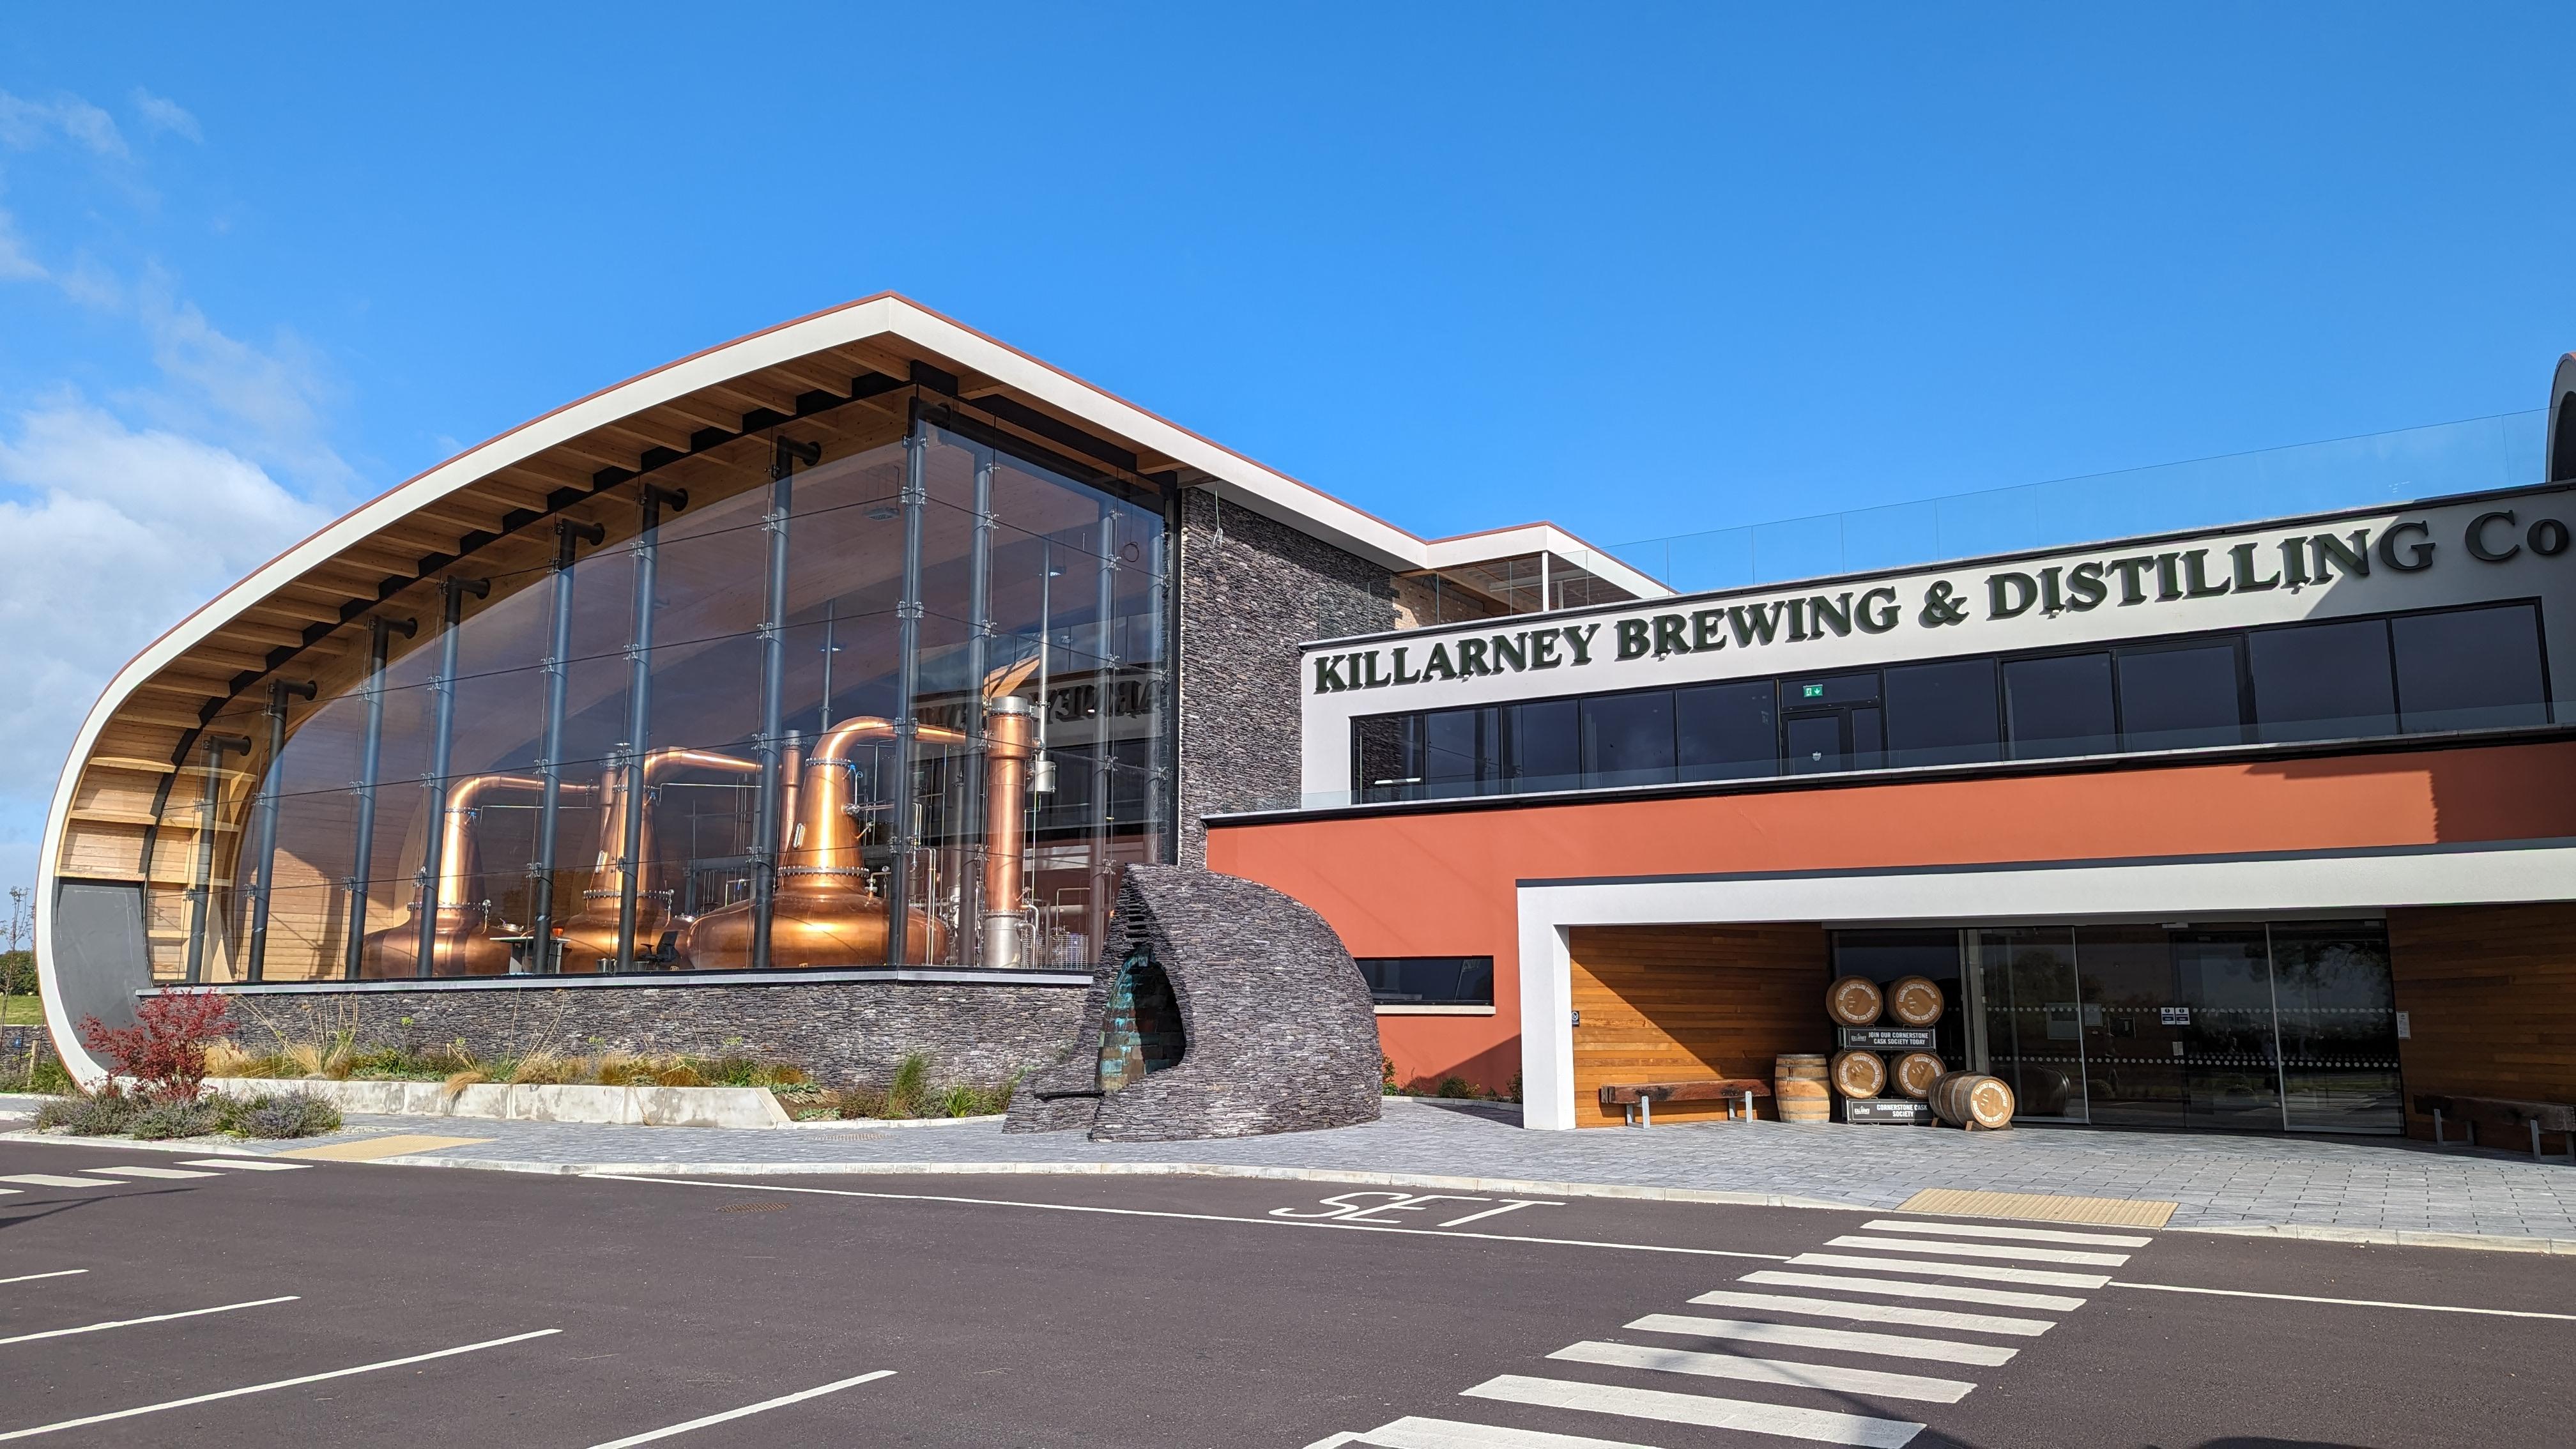 Killarney Brewing & Distilling